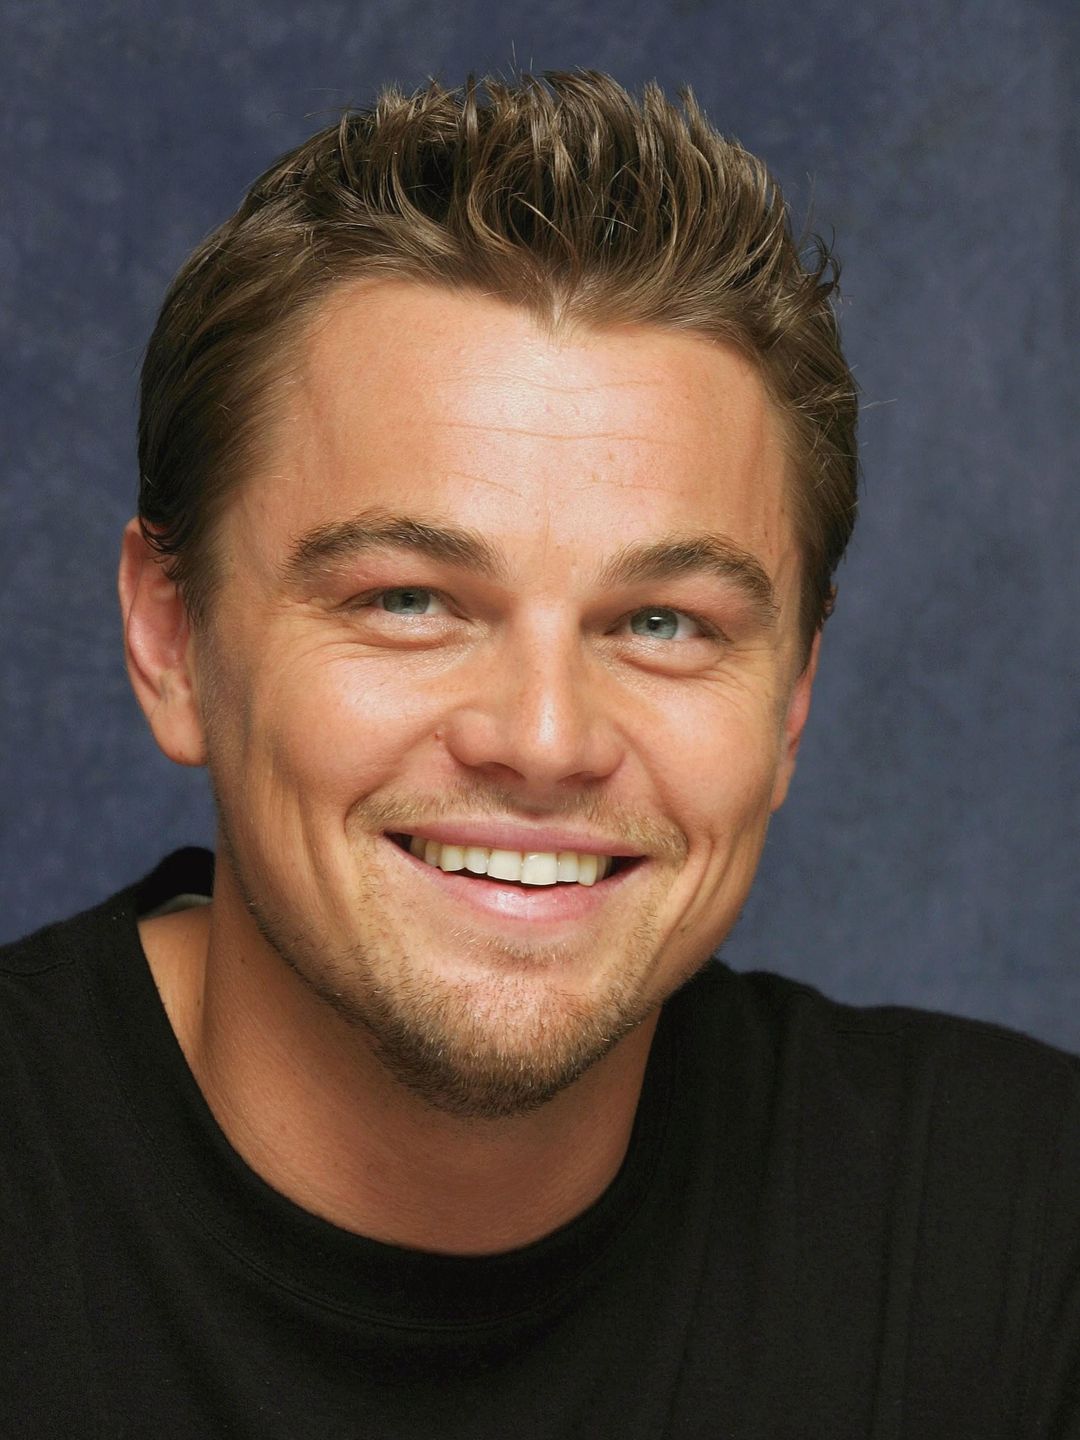 Leonardo DiCaprio early life